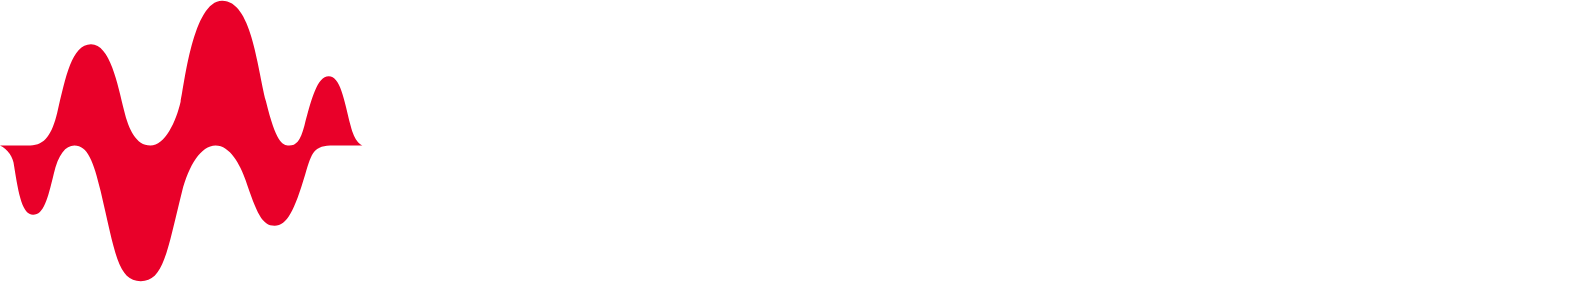 Keysight logo large for dark backgrounds (transparent PNG)